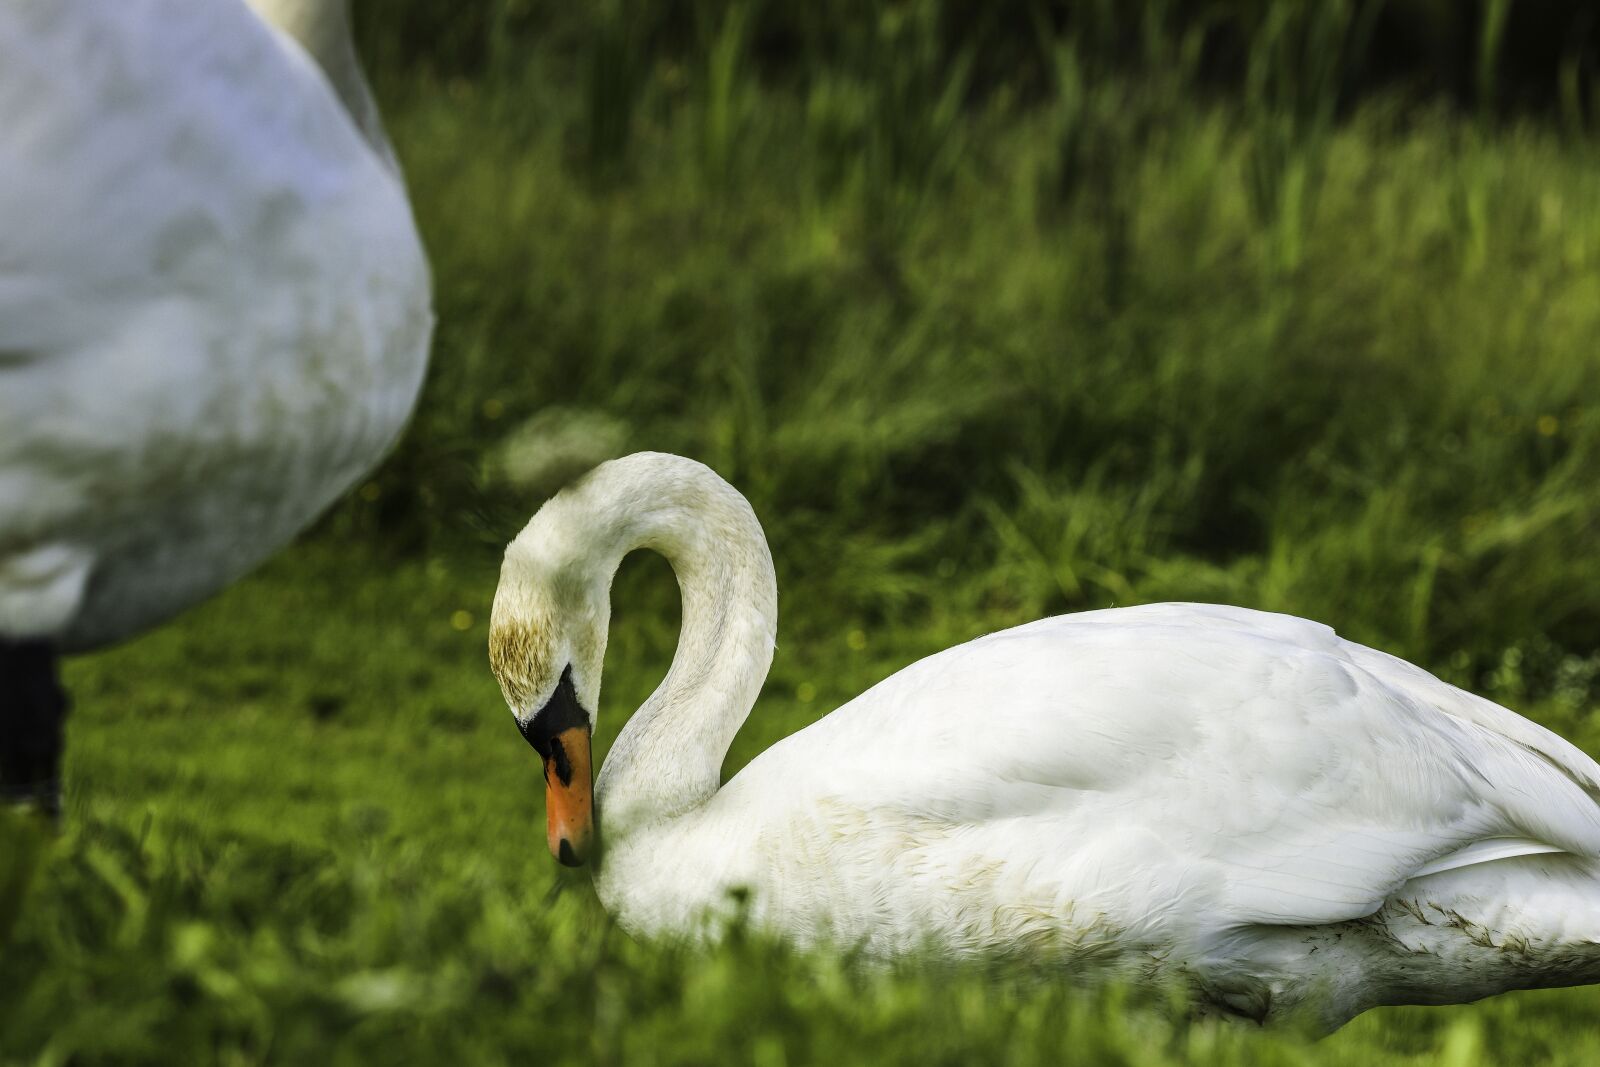 Canon EOS R sample photo. Swan, bird, animal photography